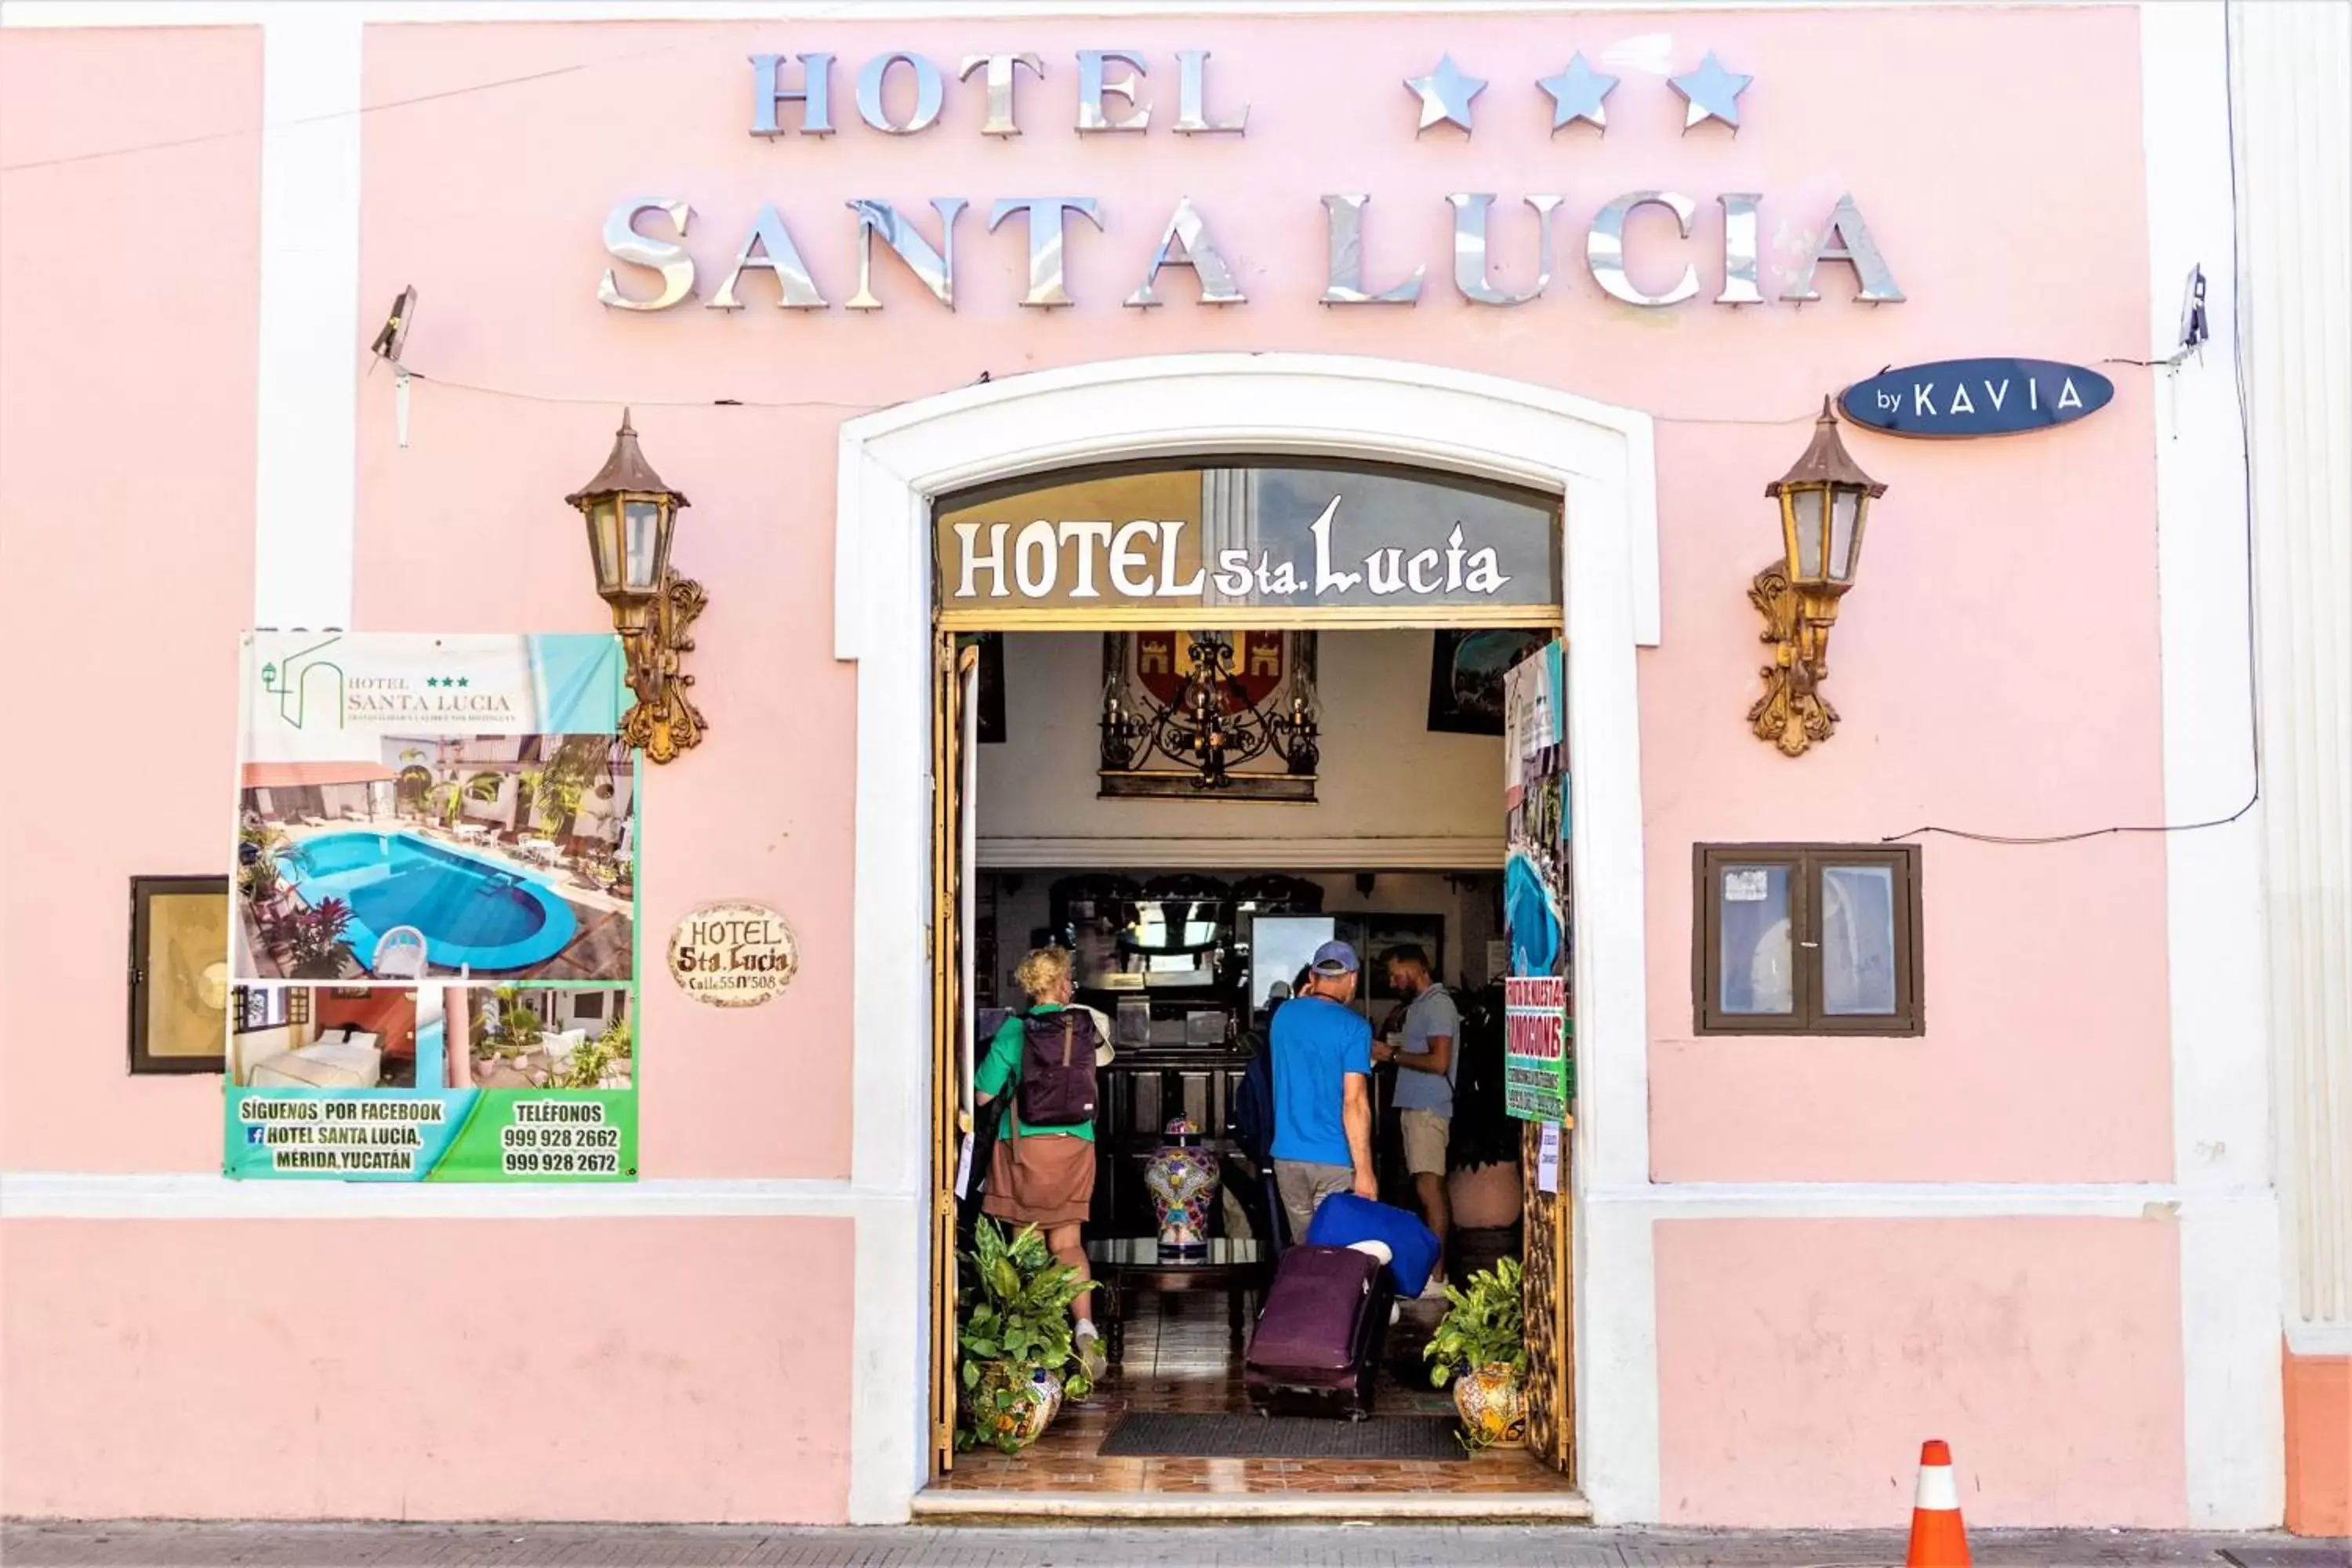 Facade/entrance in Hotel Santa Lucía